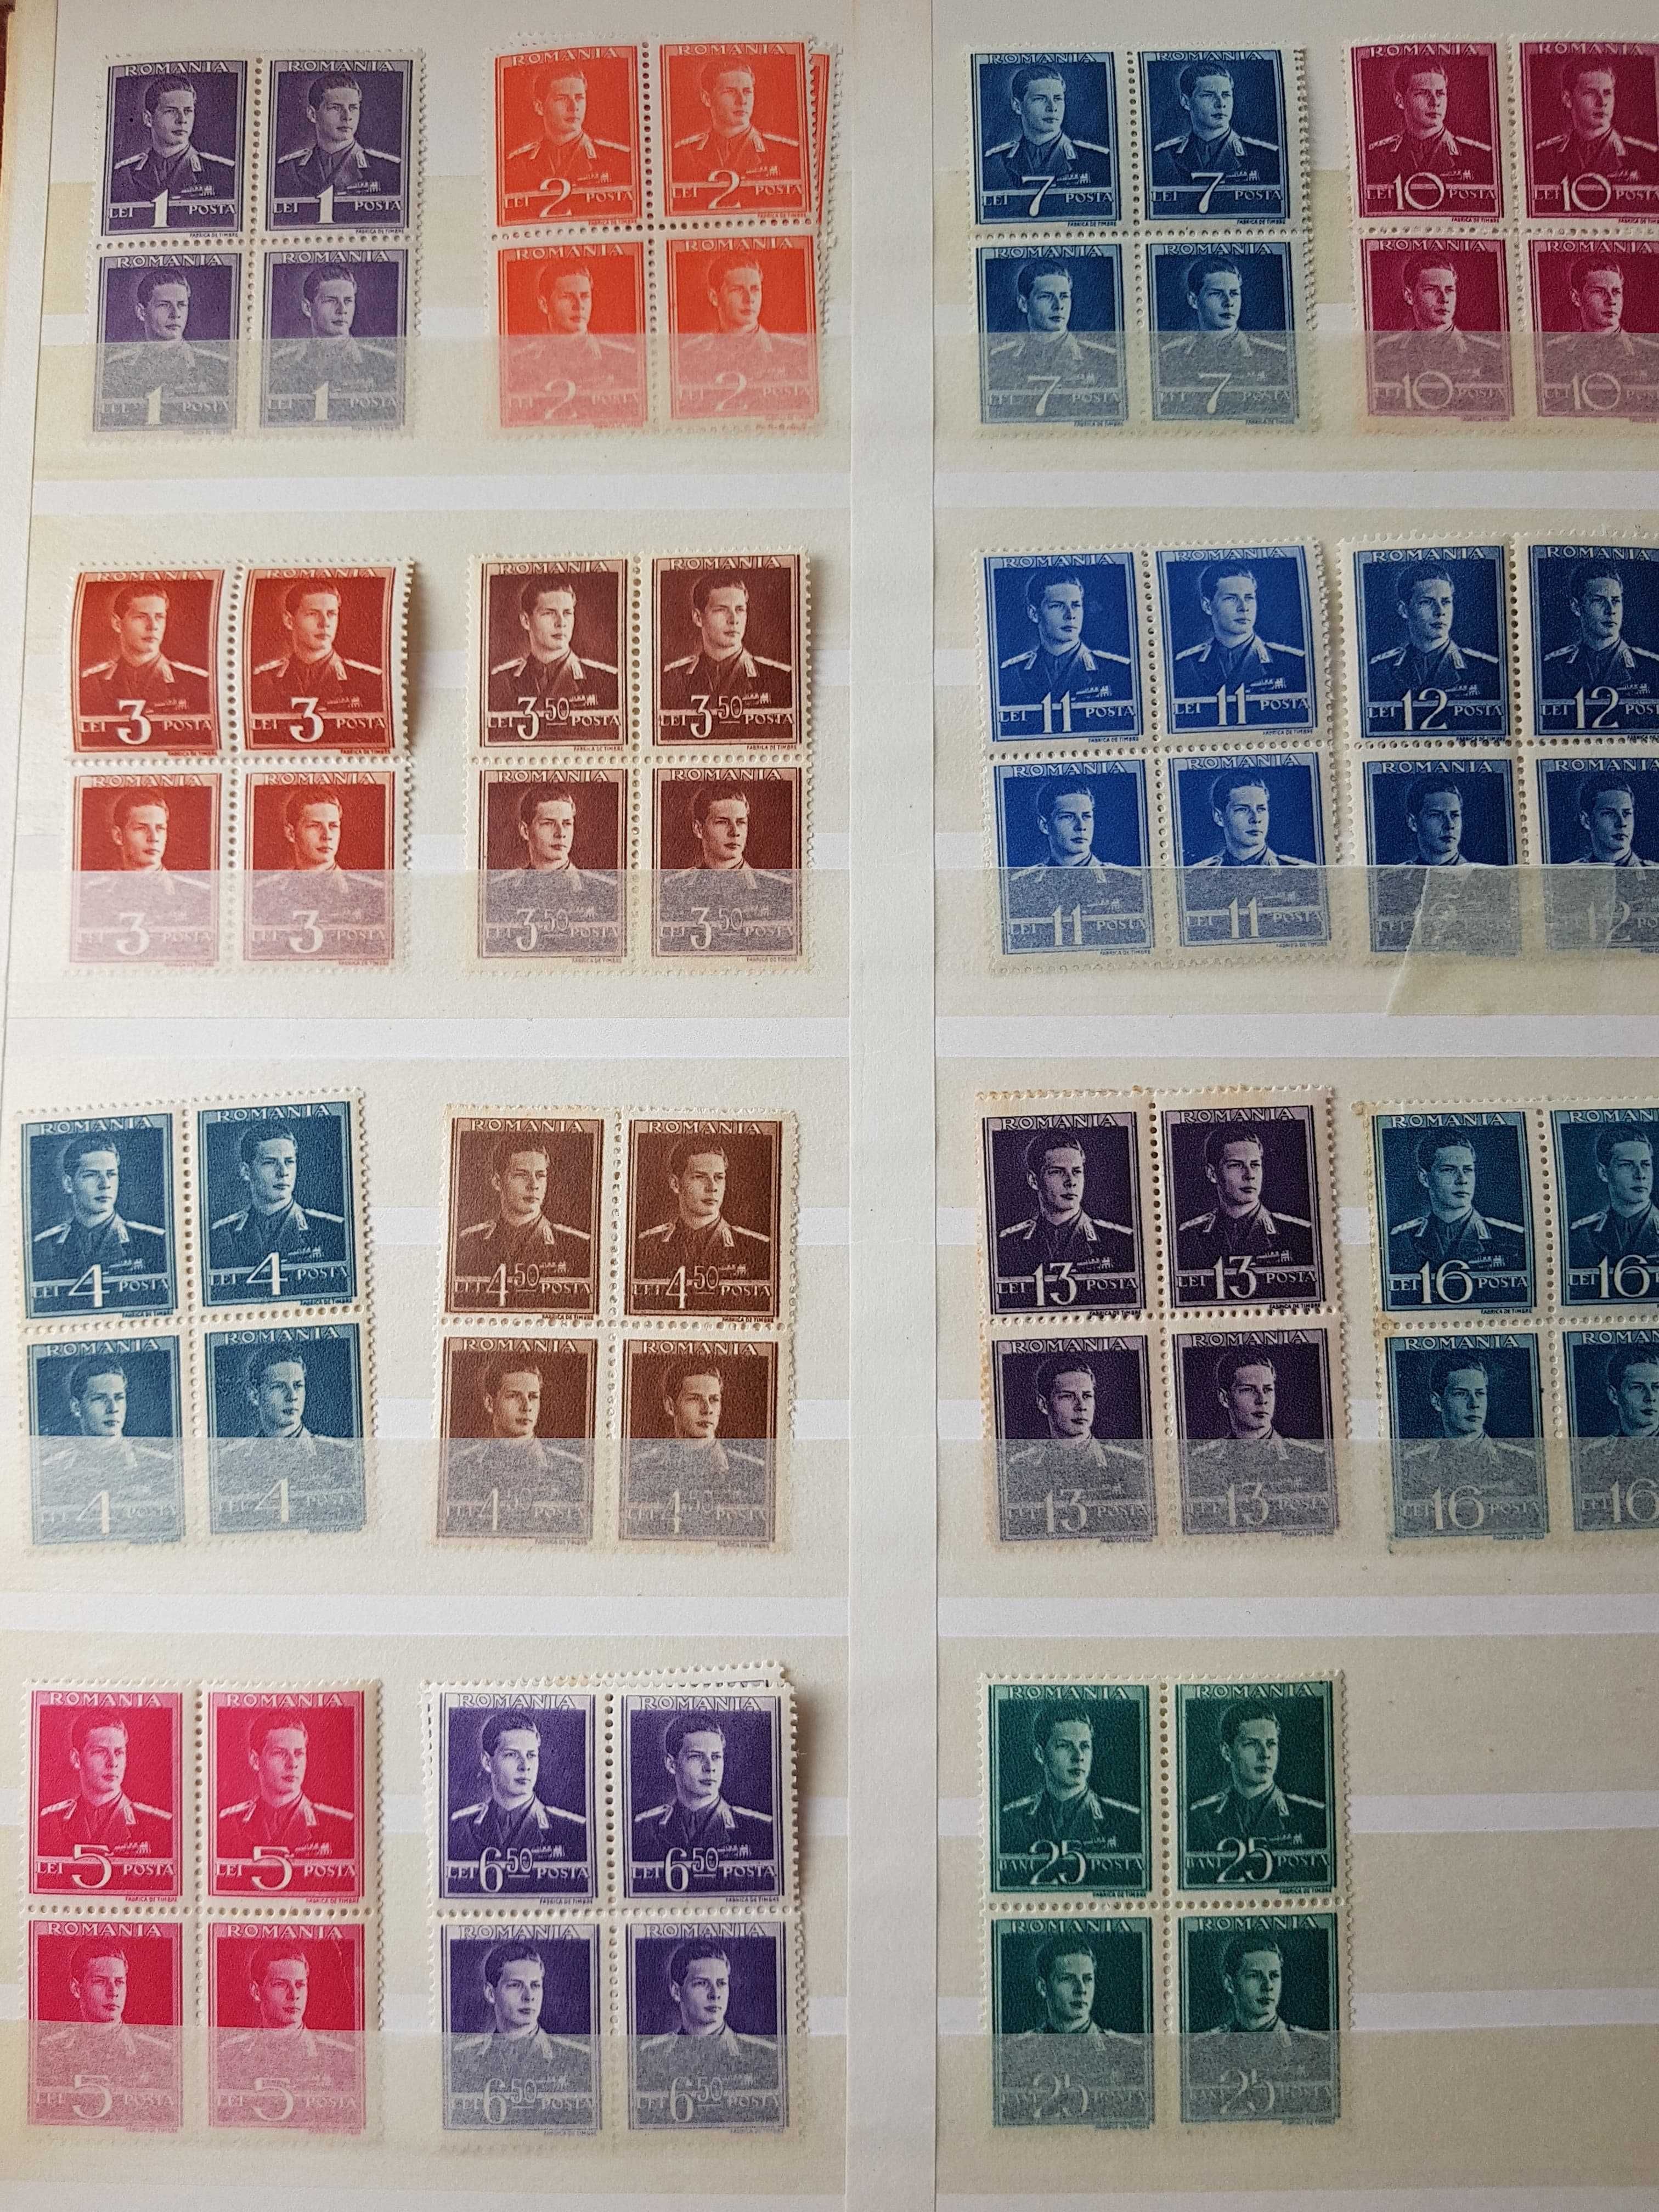 Colițe de timbre Regele Mihai nestampilate